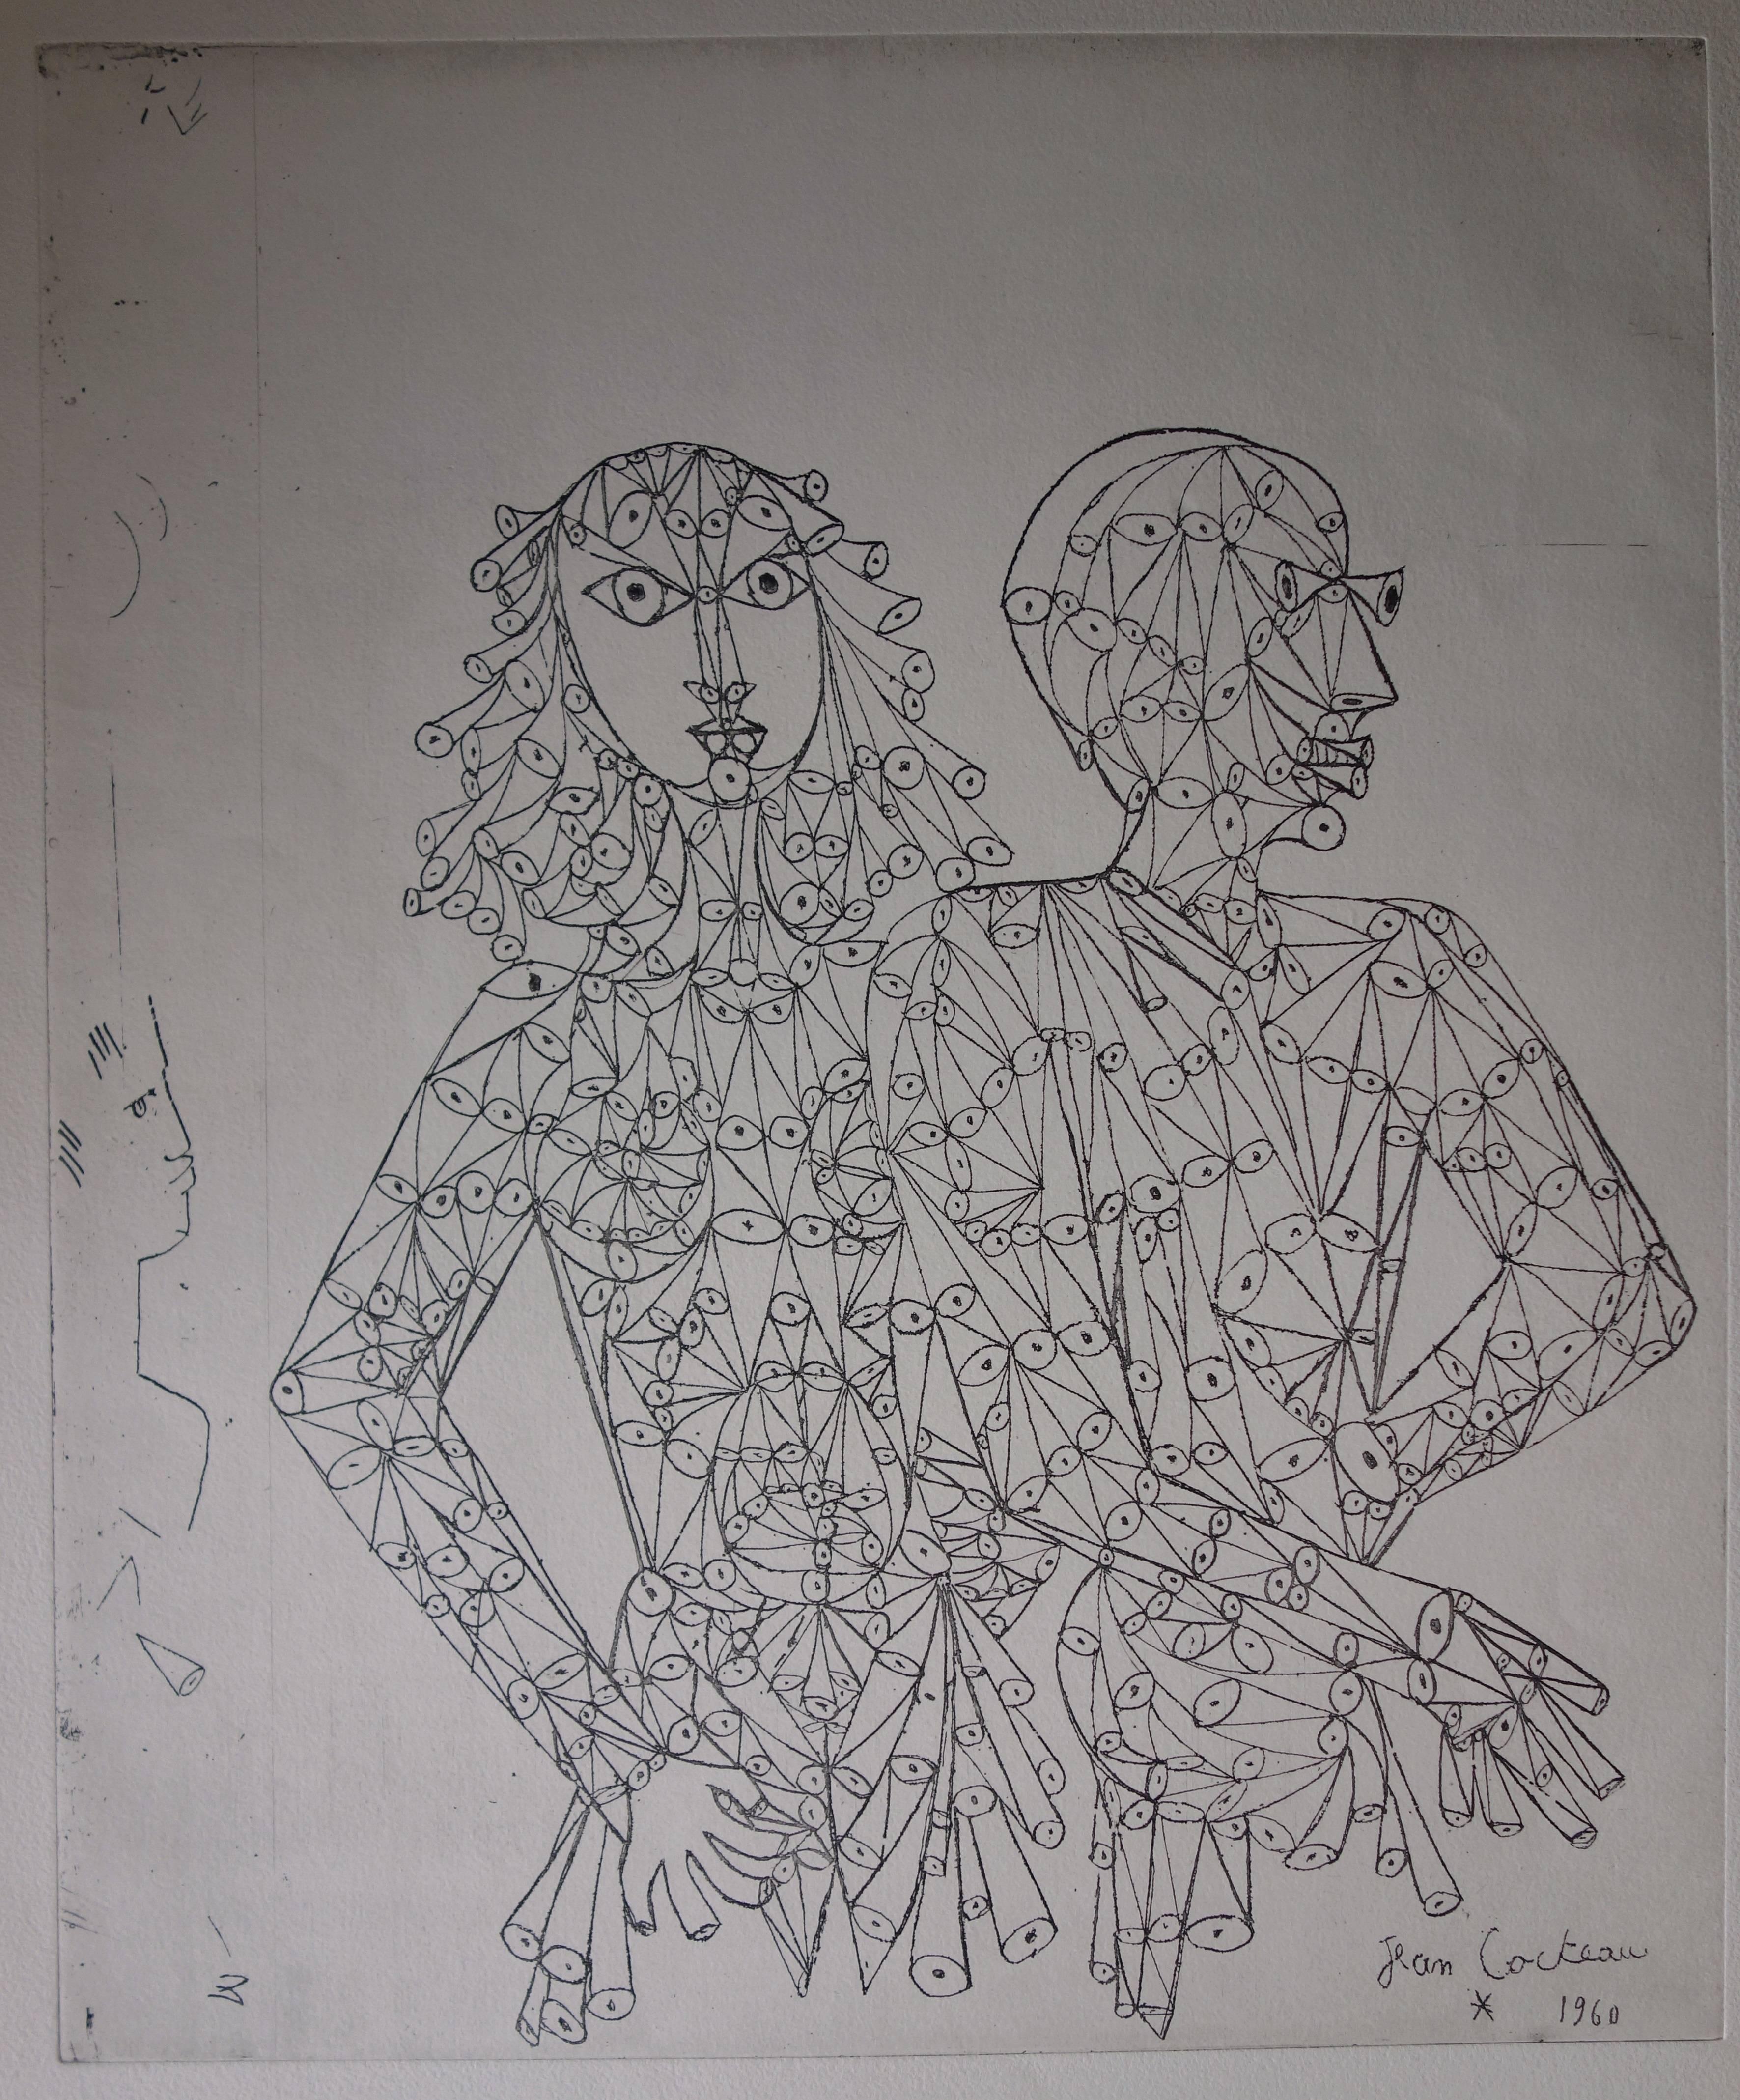 Le couple - gravure à l'eau-forte (vers 1960) - Print de Jean Cocteau